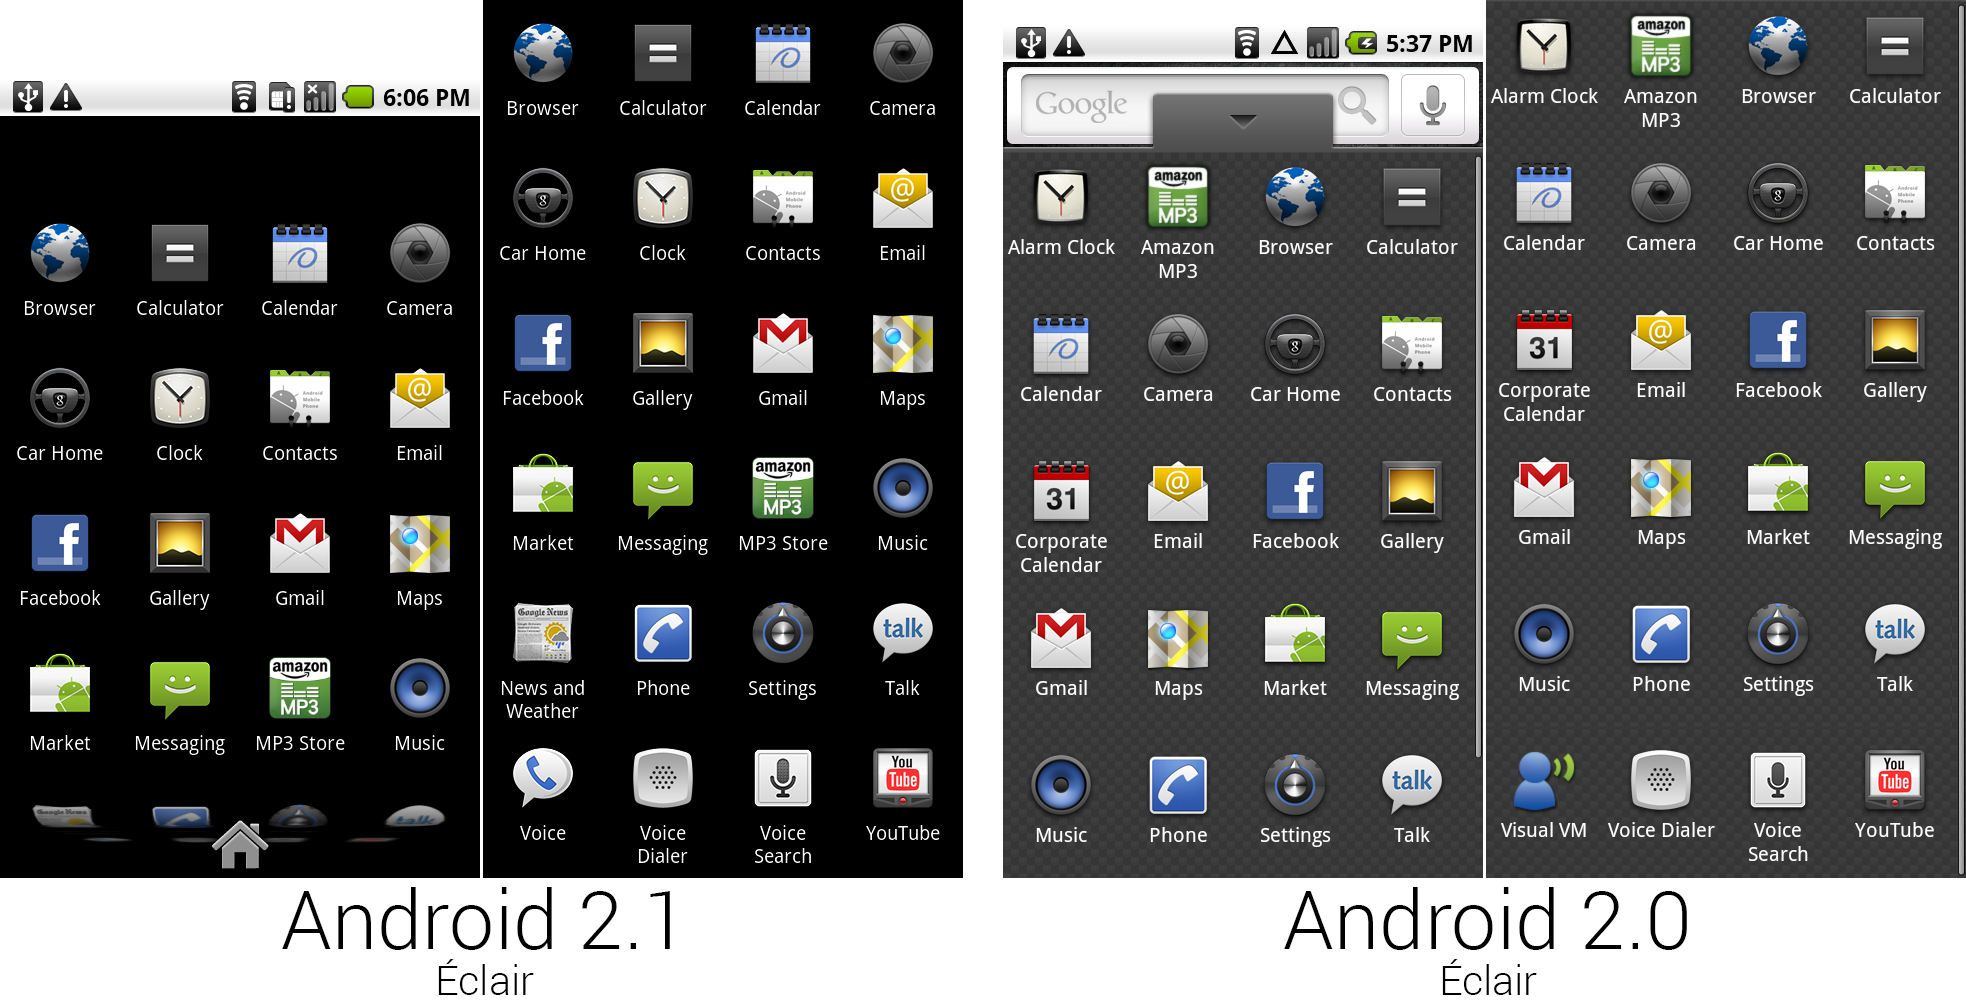 Том андроид 1 андроид. Интерфейс андроид 2. Android 2.0 Eclair. Интерфейс Android 2.3. Андроид 2.1.